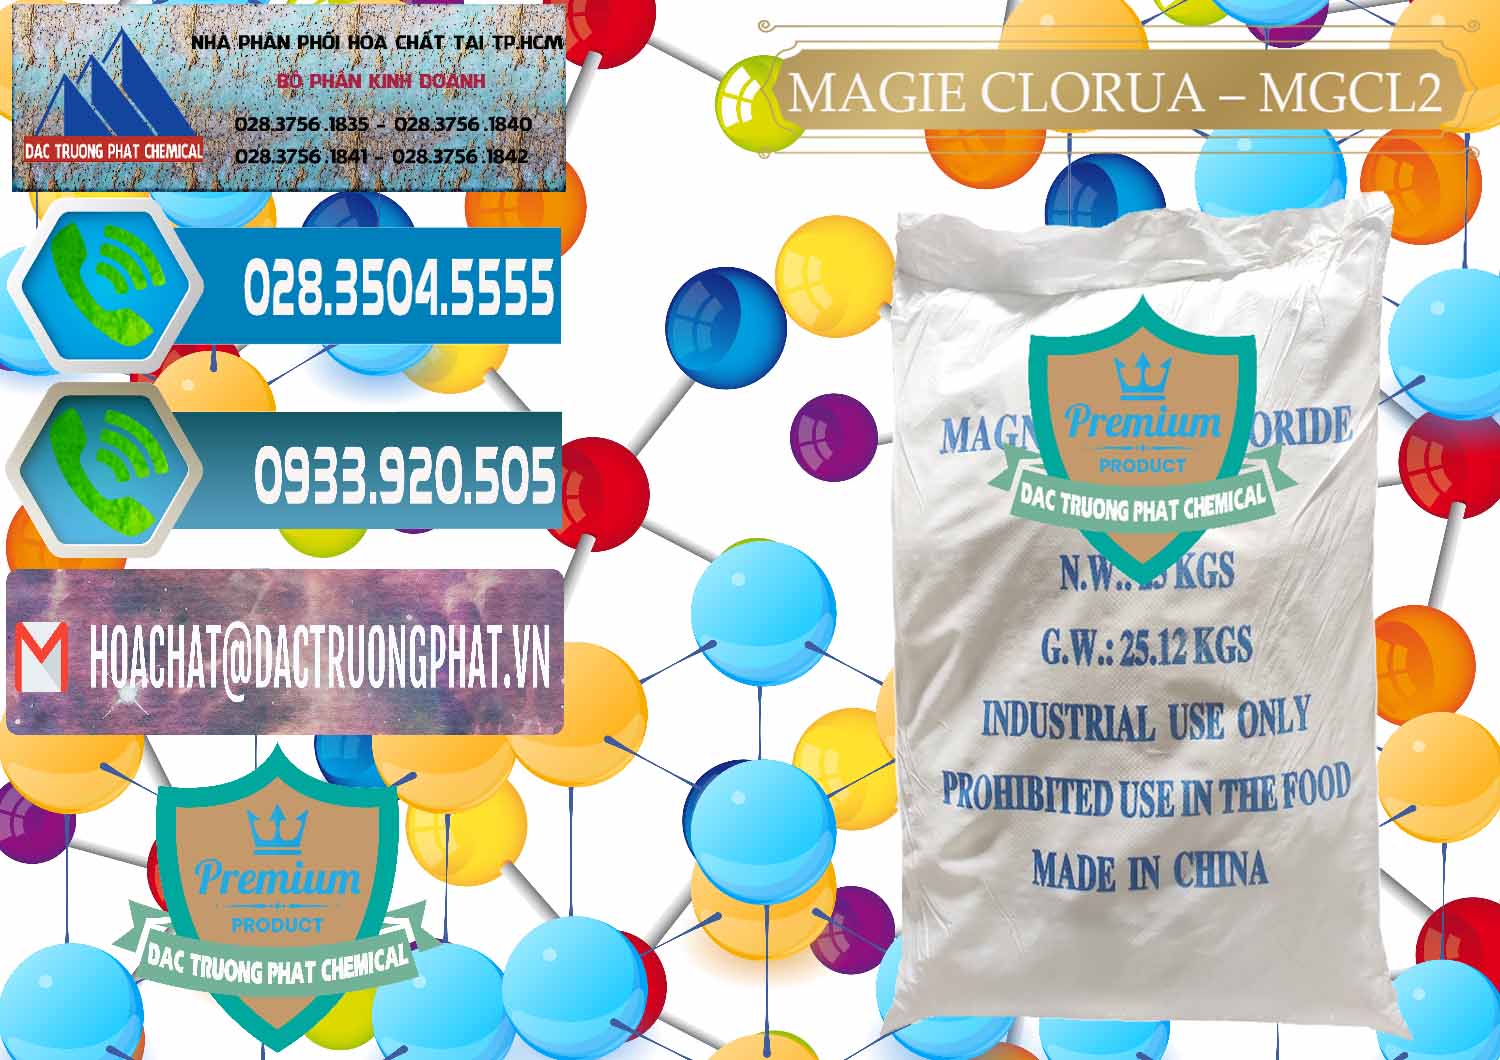 Phân phối - bán Magie Clorua – MGCL2 96% Dạng Vảy Trung Quốc China - 0091 - Cty phân phối & cung ứng hóa chất tại TP.HCM - congtyhoachat.net